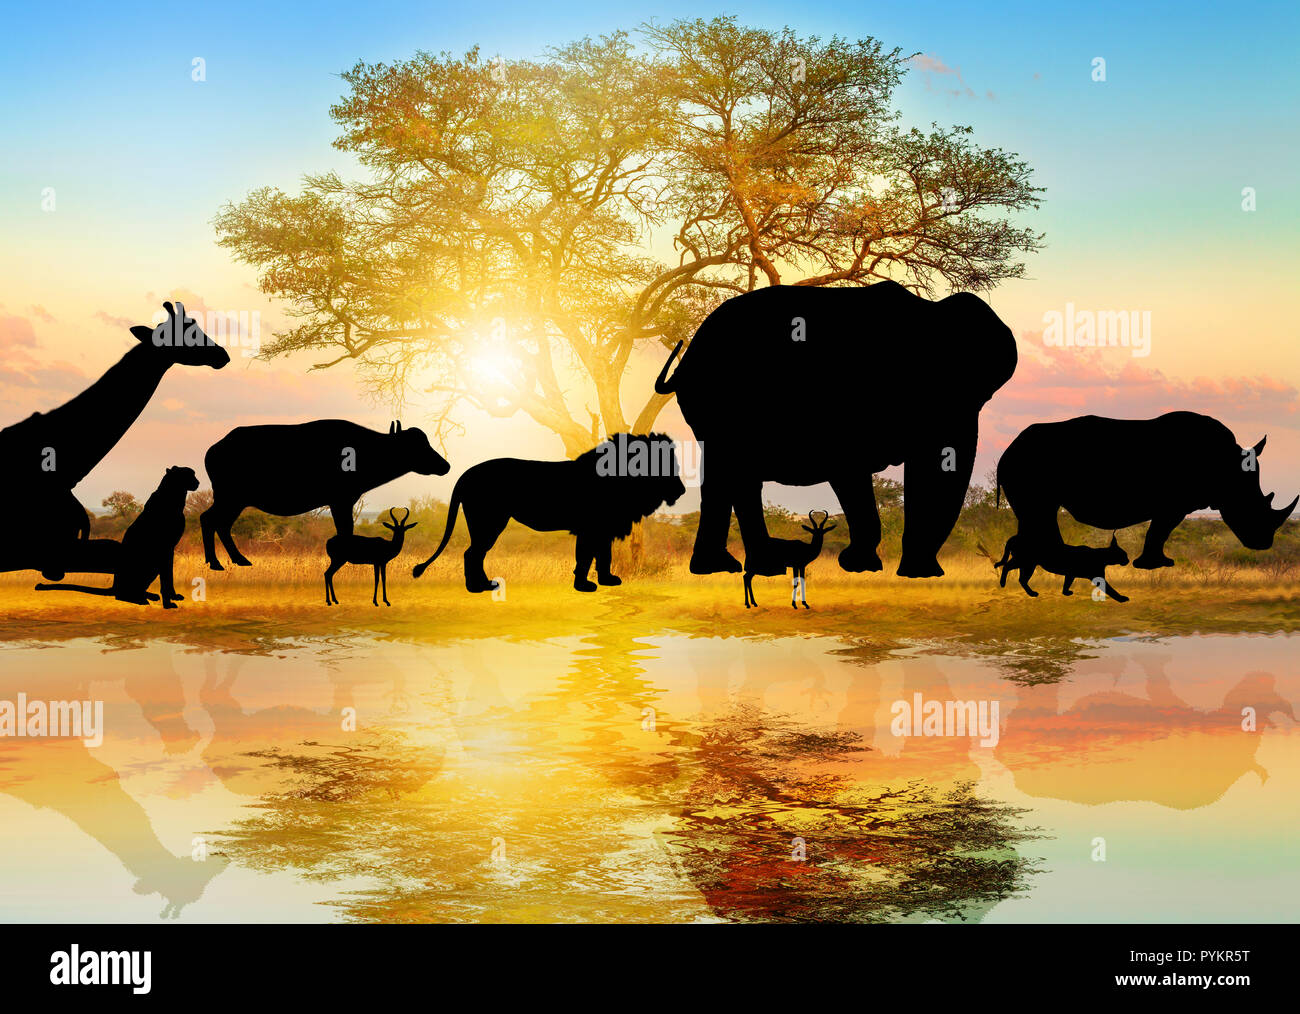 Silhouette der wilden Tiere auf afrikanische Akazie Hintergrund bei Sonnenaufgang Licht gesäumt auf einem Teich wider. Serengeti Wildlife Area in Tansania, Afrika. African Safari Szene Savannenlandschaft. Hintergrundbild Stockfoto